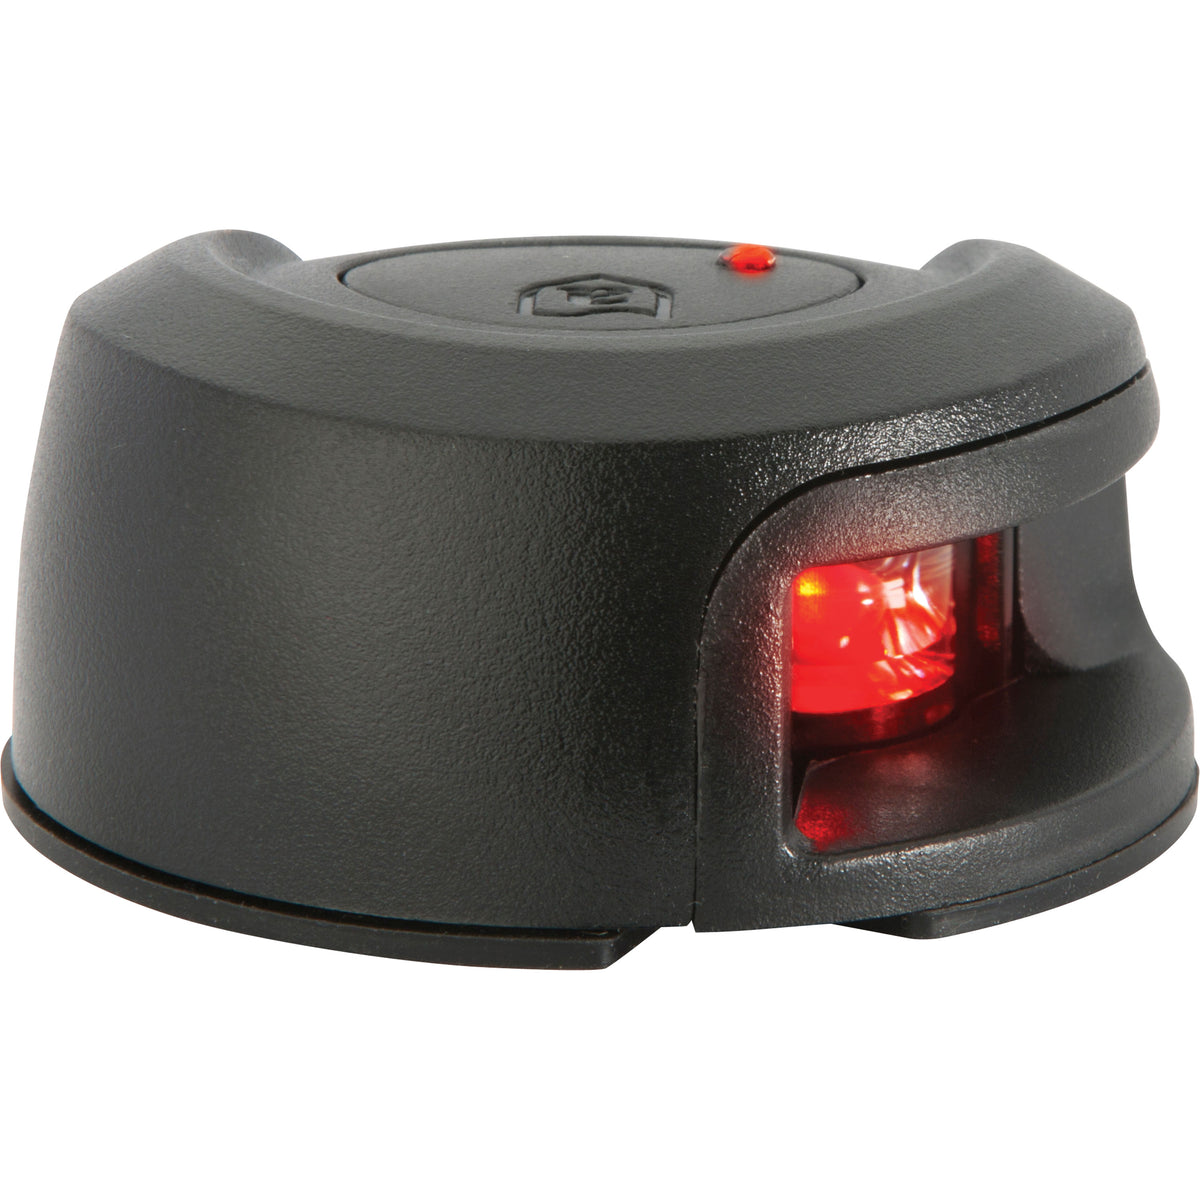 Attwood NV2012PBR-7 LED Navigation - Bi-Color Light Port, Black